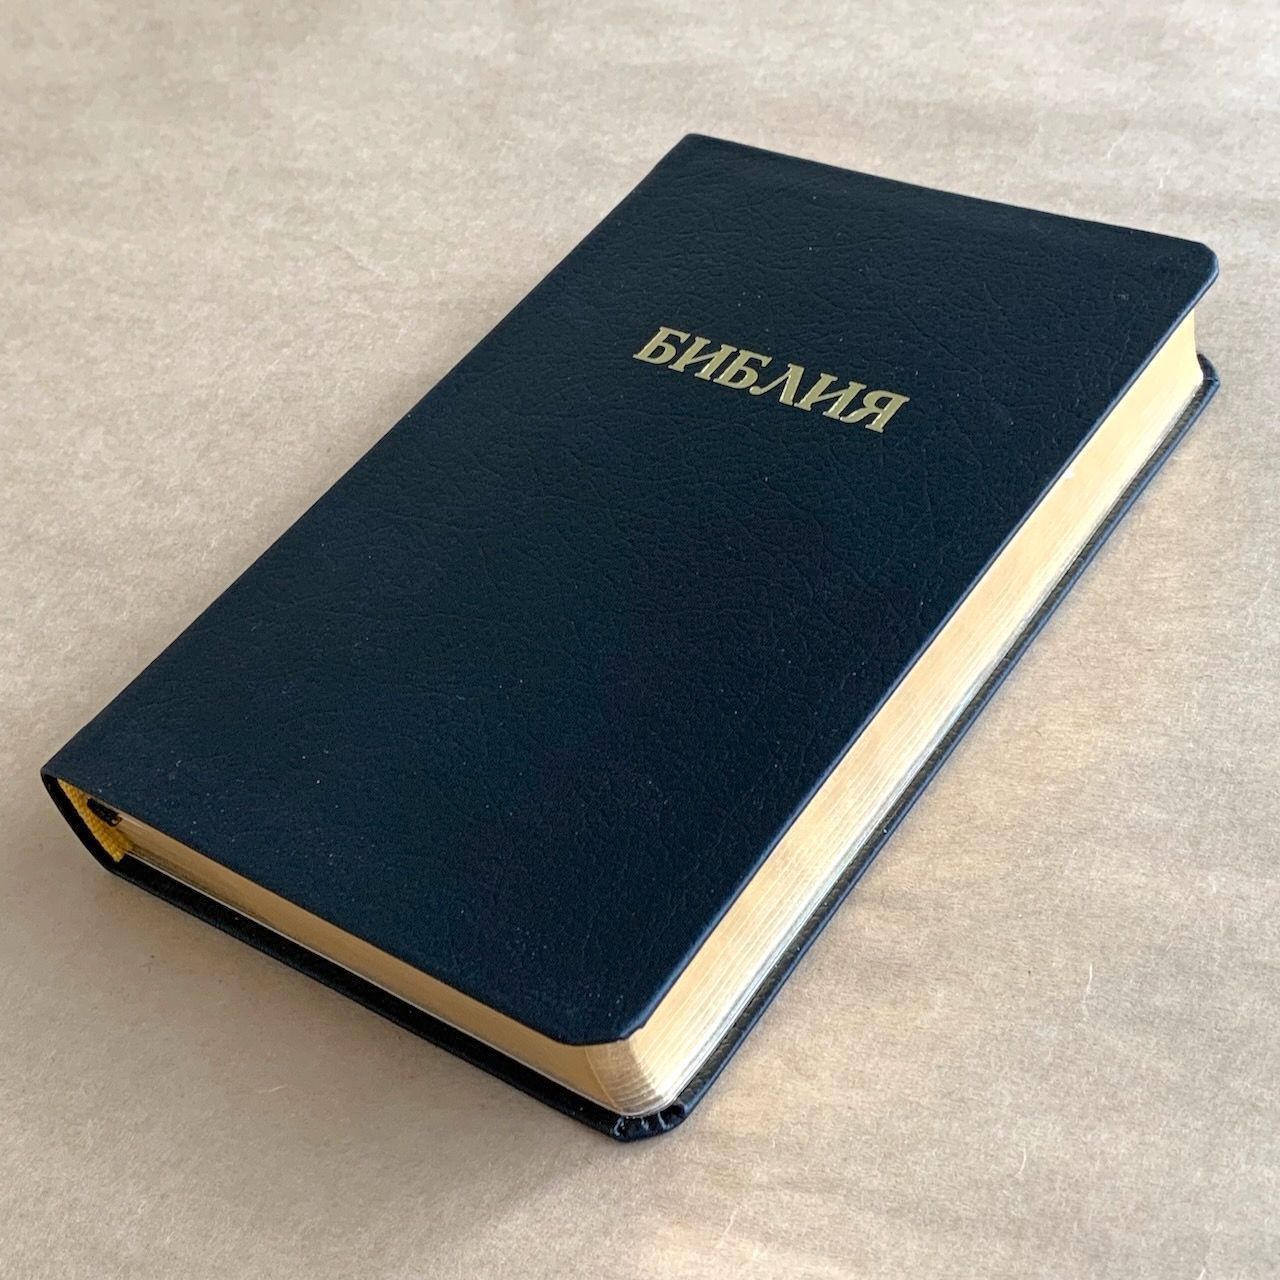 Библия 048 код D4 надпись "библия", кожаный переплет, цвет черный, формат 125*190 мм, золотой обрез, синодальный перевод, паралельные места по центру страницы, 2 закладки, шрифт 10-11 кегель, цветные карты